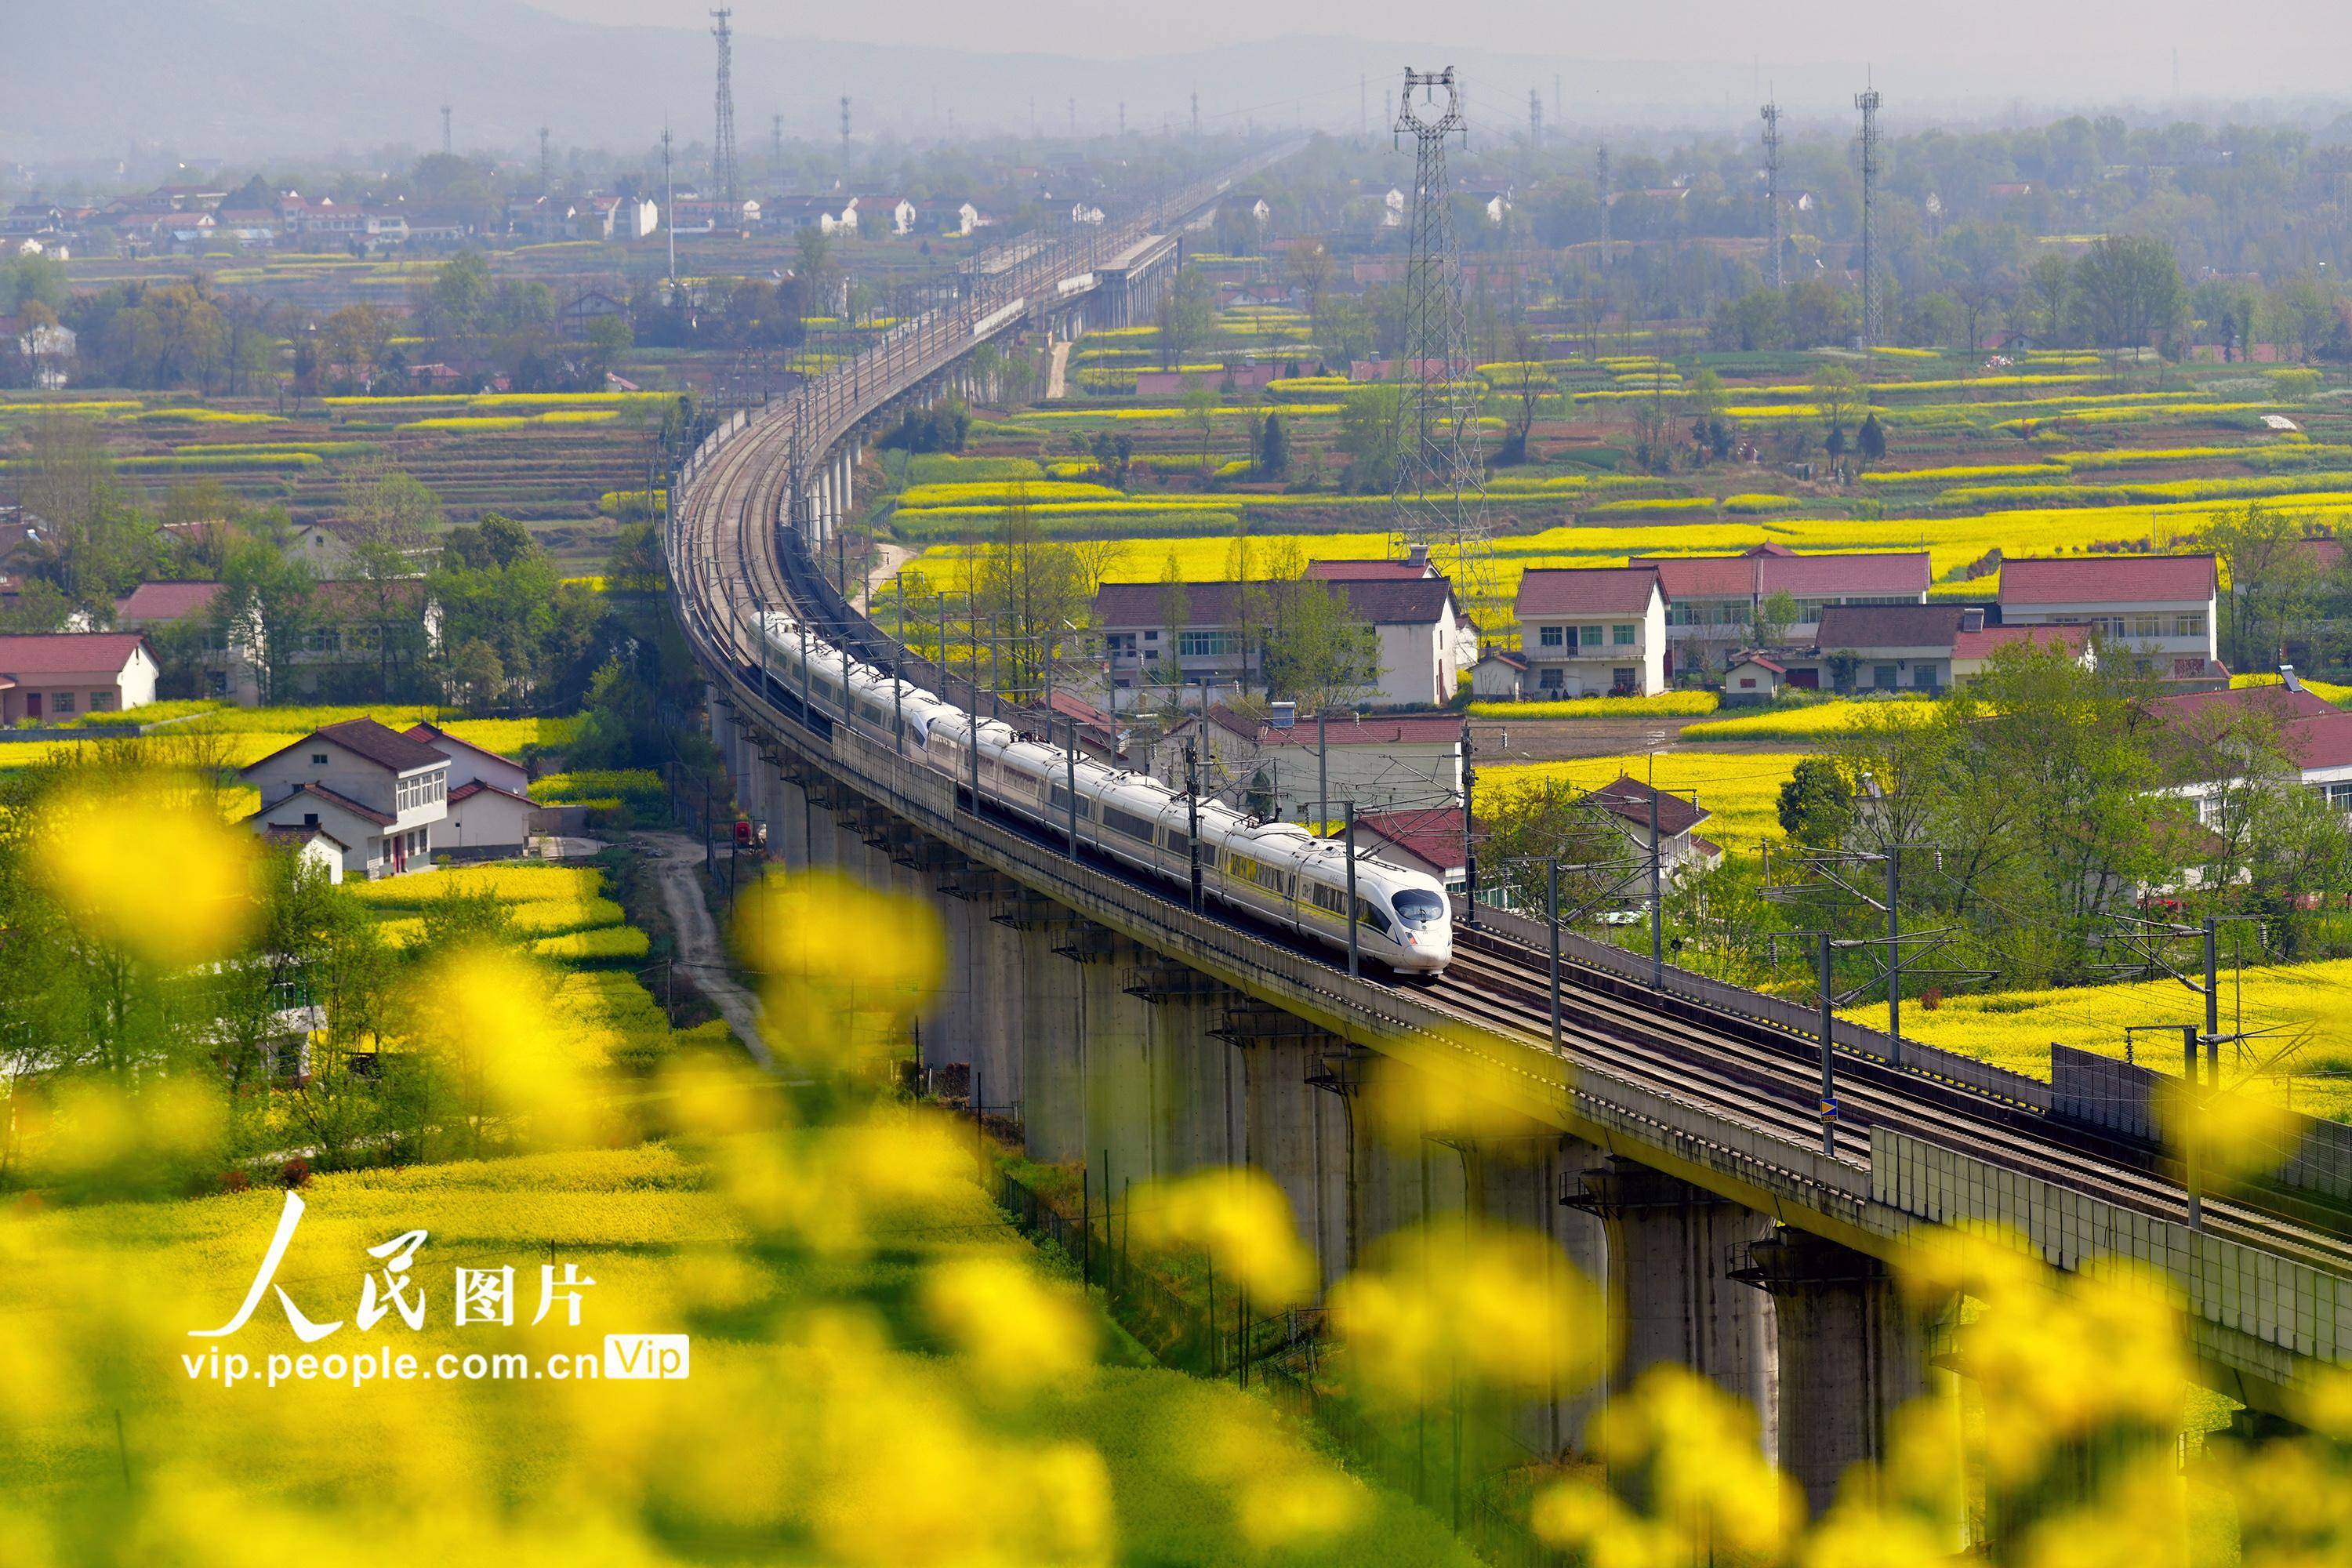 高铁列车在花海中穿行,构成一道亮丽的风景线